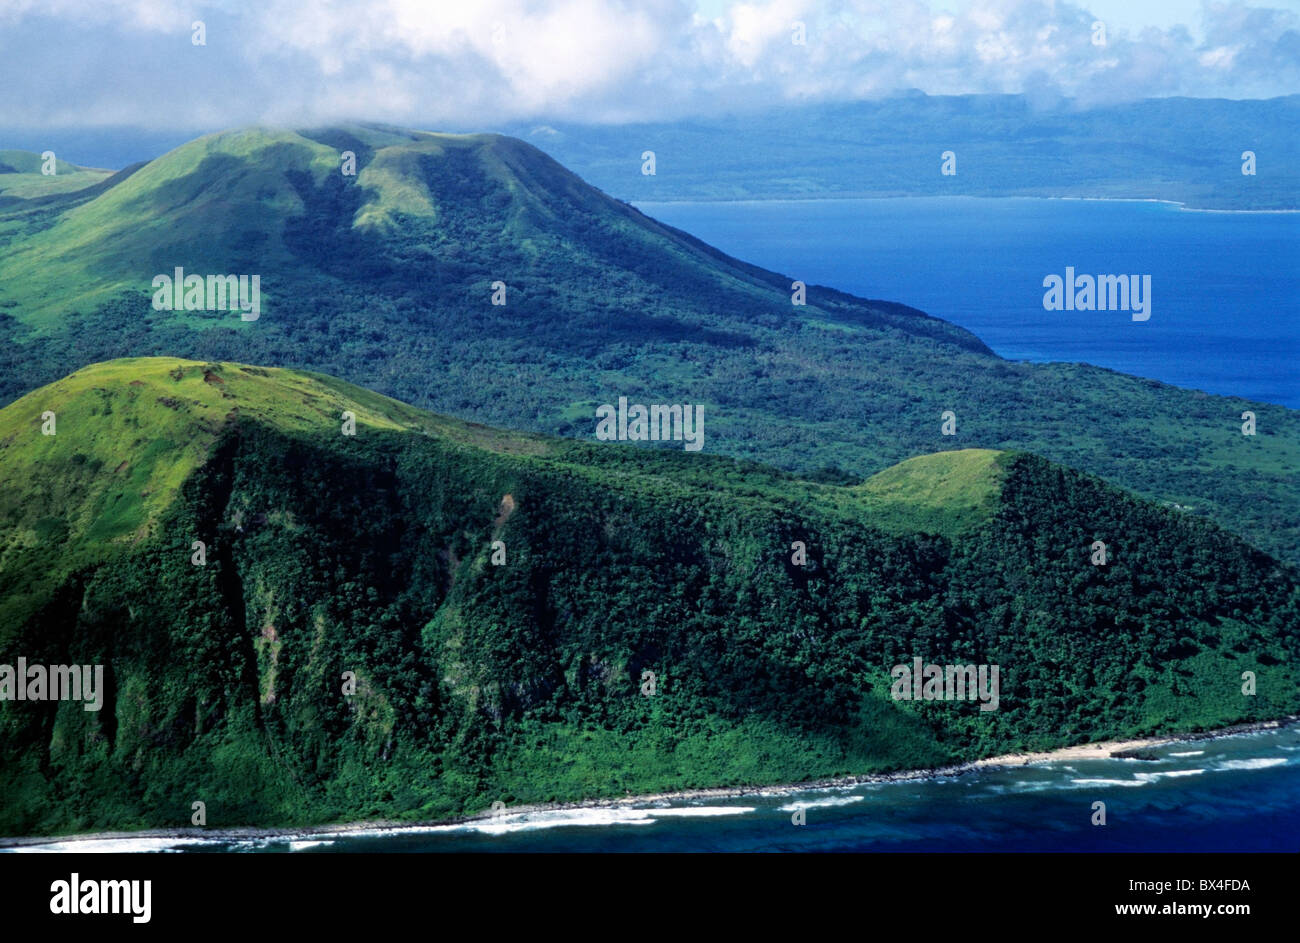 Isole Vanuatu - antenna vulcani sulla Nguna island, vicino all'isola di Efate, Vanuatu nel sud dell'Oceano Pacifico. Foto Stock